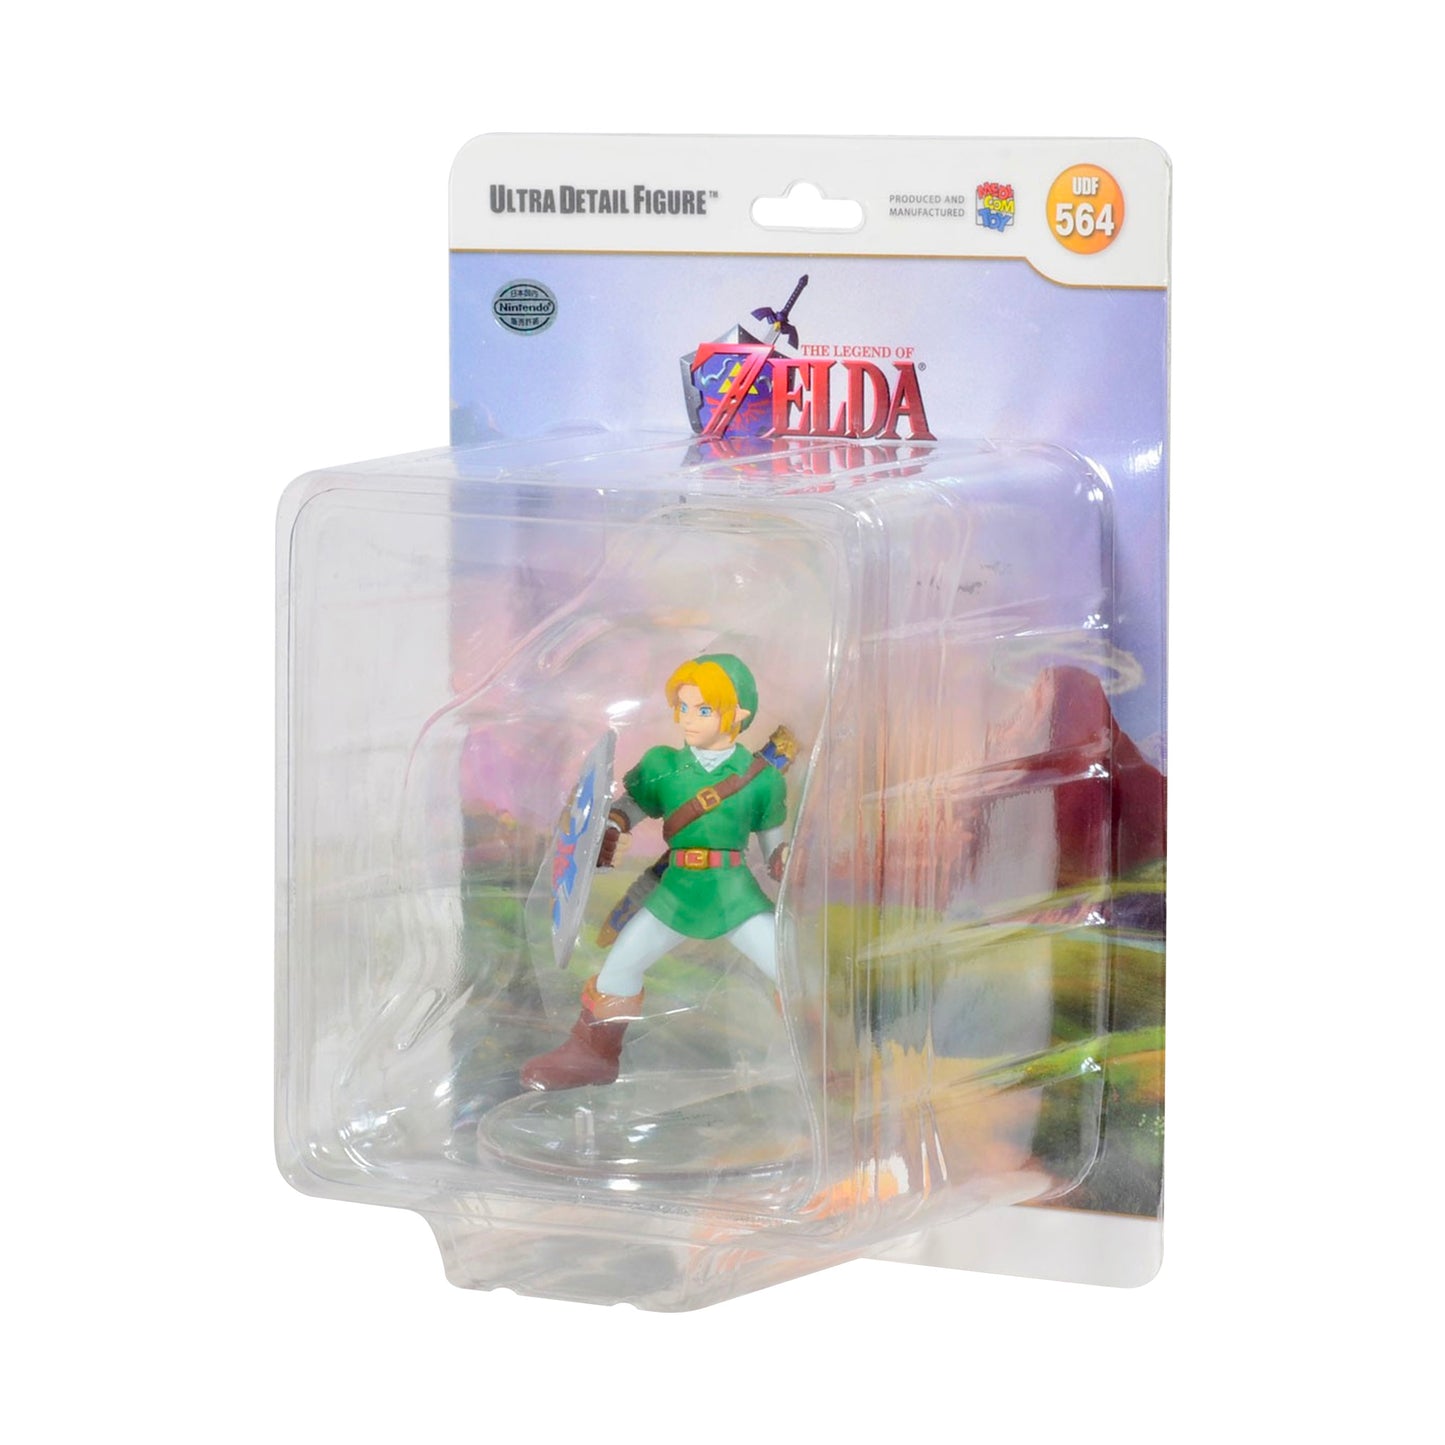 MEDICOM TOY x Nintendo: UDF - The Legend of Zelda Ocarina of Time No.564 Link Figure